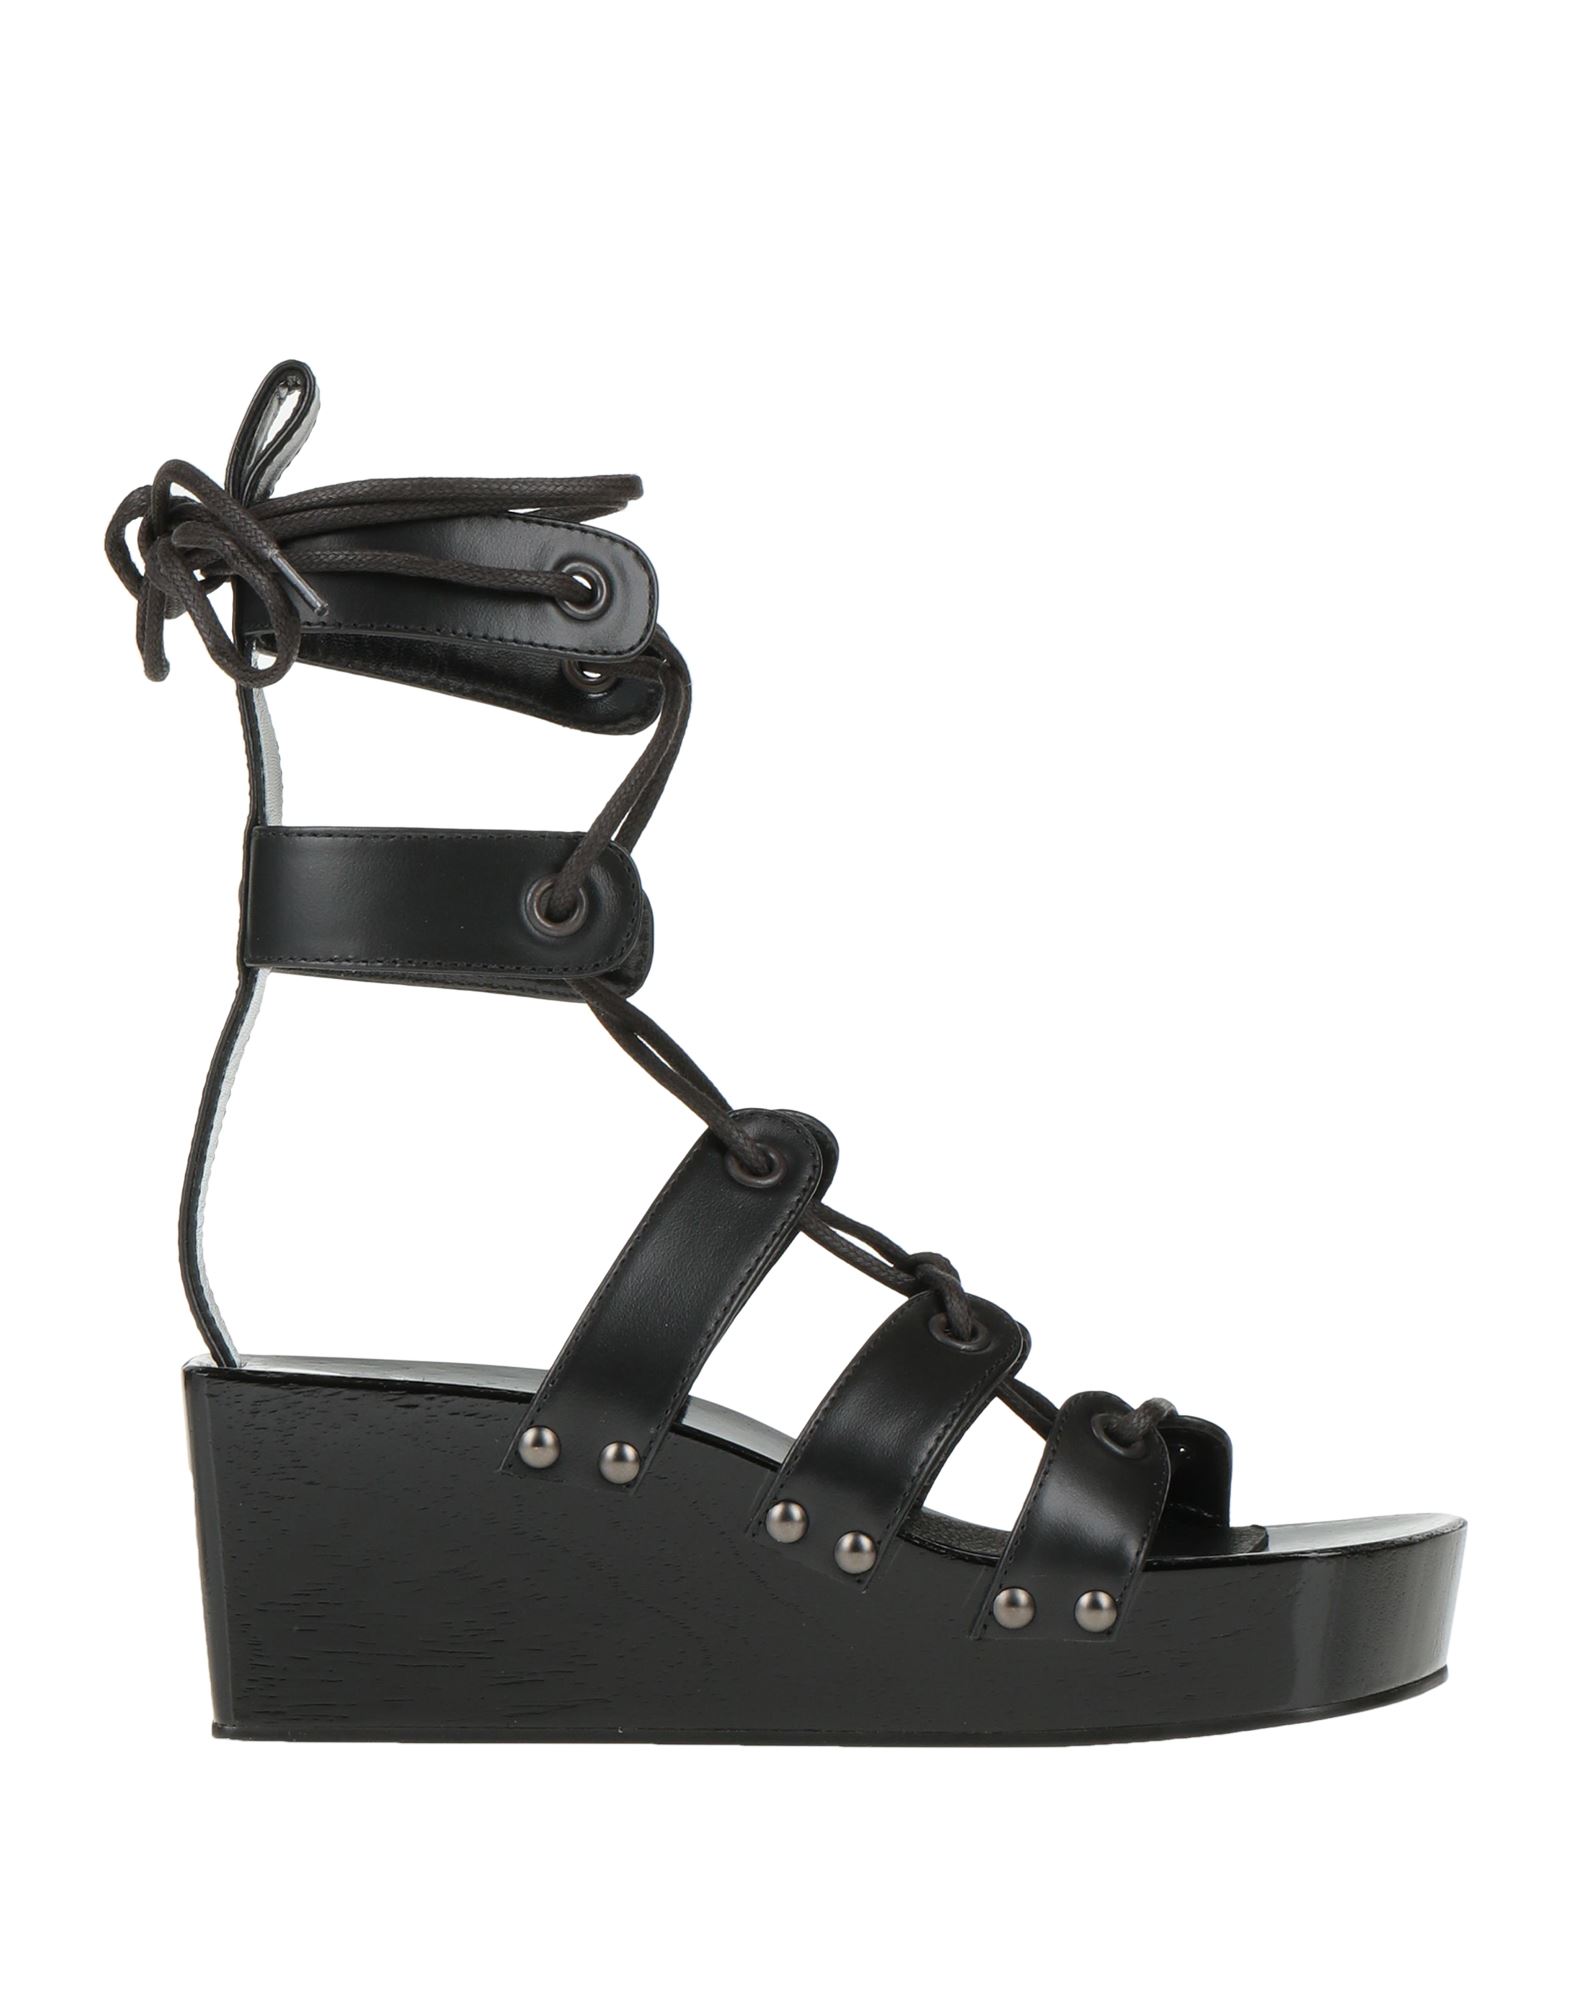 Shop Rabanne Woman Sandals Black Size 8 Soft Leather